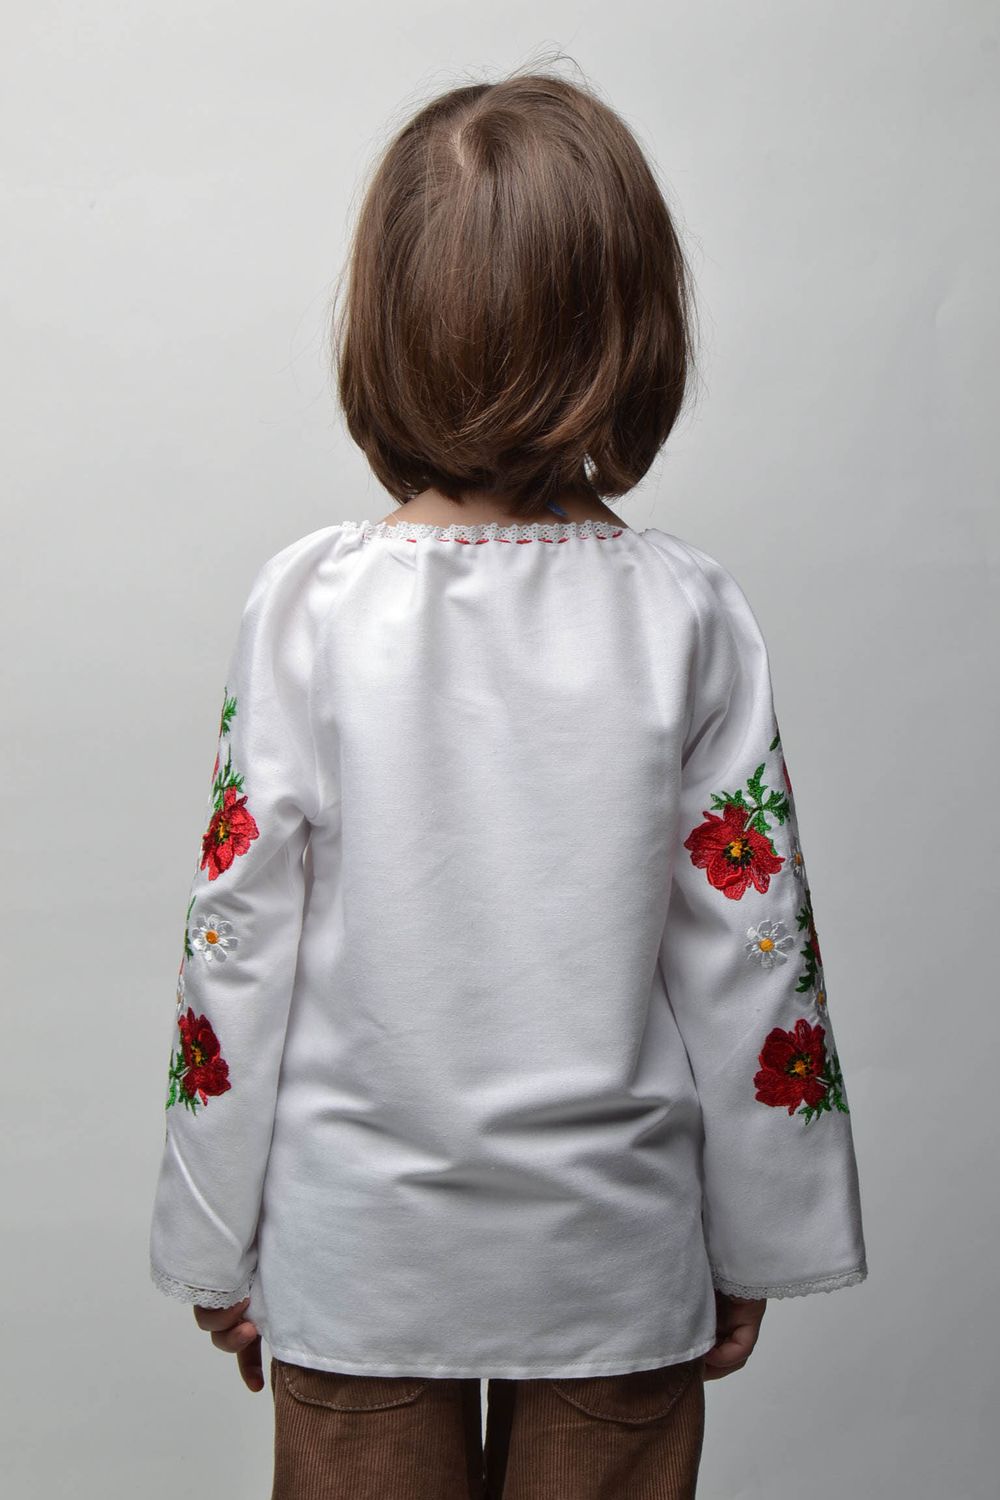 Camisa bordada de realce para niña de 5-7 años foto 3